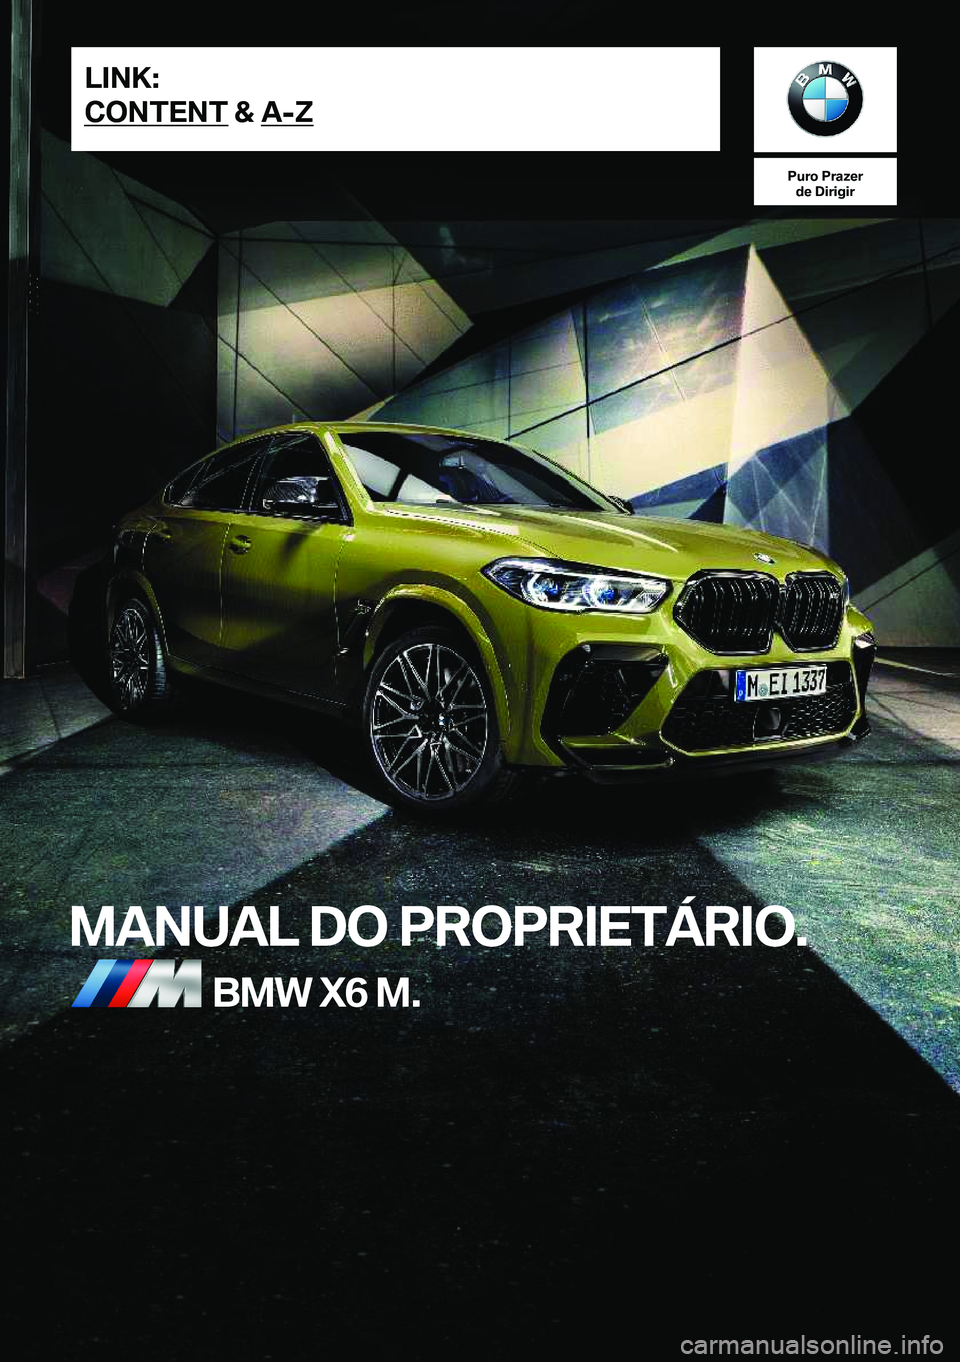 BMW X6 M 2021  Manual do condutor (in Portuguese) �P�u�r�o��P�r�a�z�e�r�d�e��D�i�r�i�g�i�r
�M�A�N�U�A�L��D�O��P�R�O�P�R�I�E�T�Á�R�I�O�.�B�M�W��X�6��M�.�L�I�N�K�:
�C�O�N�T�E�N�T��&��A�-�Z�O�n�l�i�n�e��E�d�i�t�i�o�n��f�o�r��P�a�r�t��n�o�.�